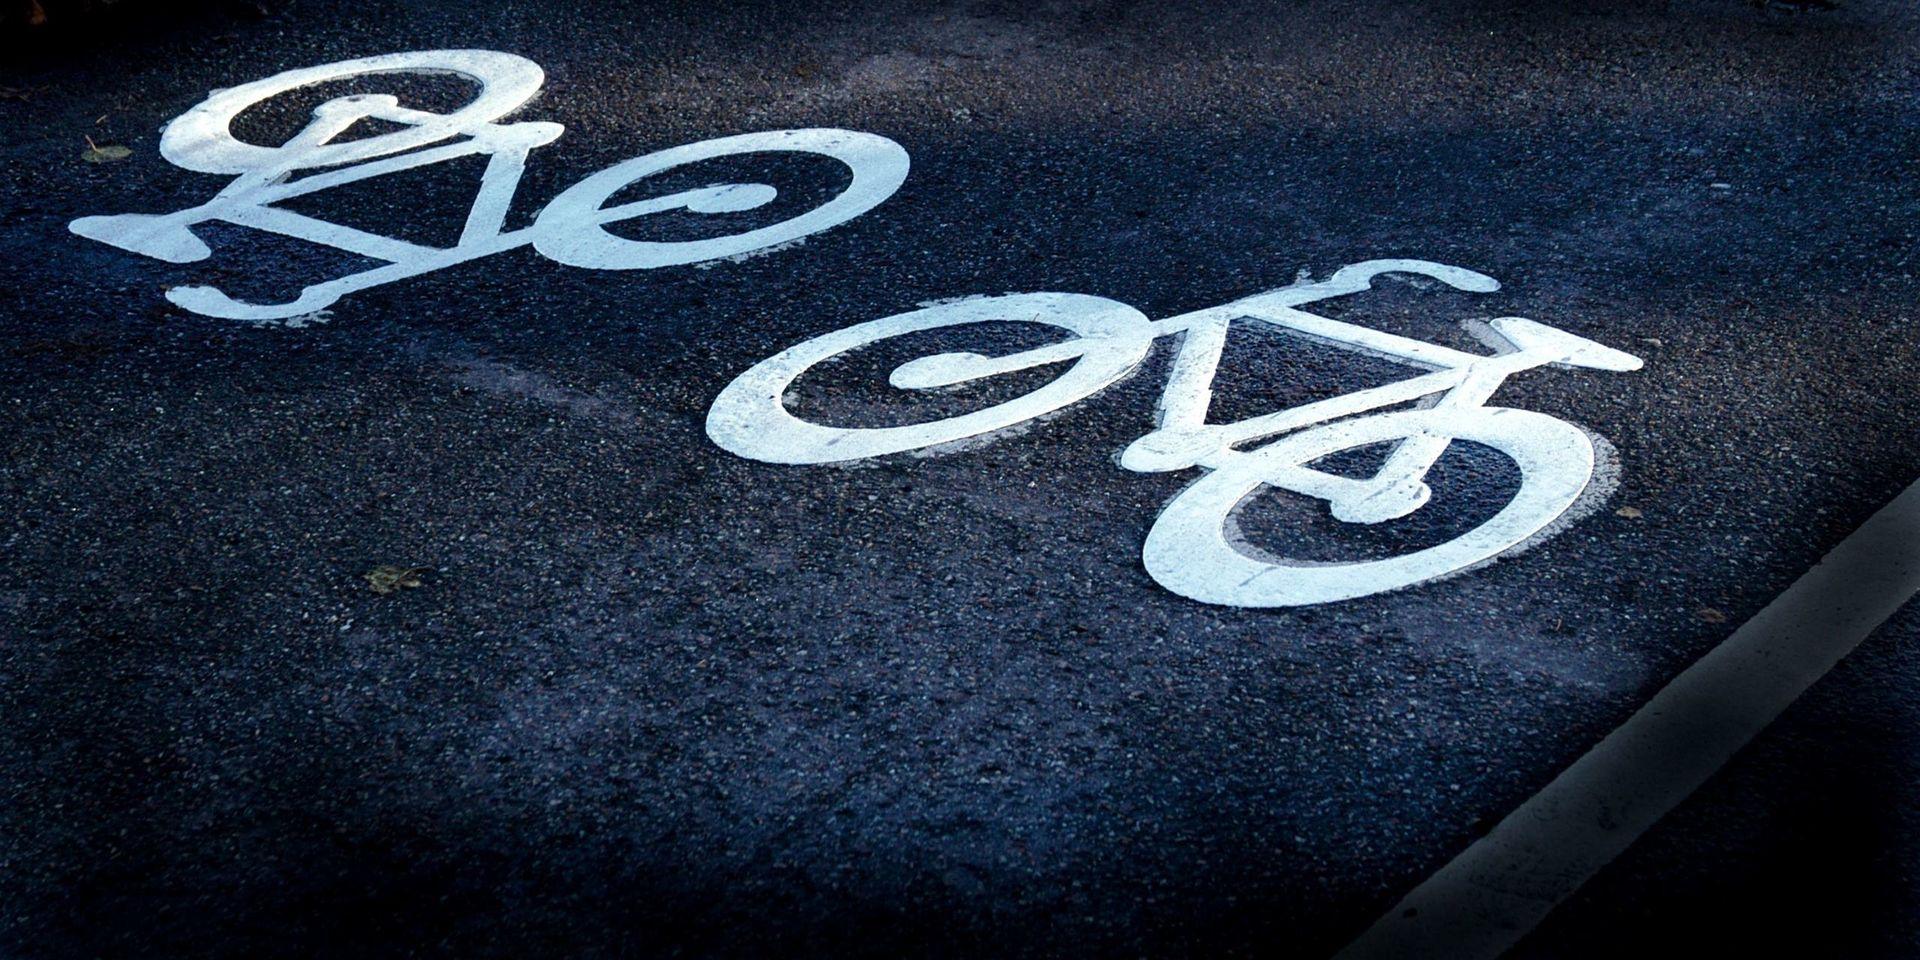 Vi är många som stöder Stens krav att kommunen gör en cykelväg utmed Syllingevägen, skriver insändarskribenten.